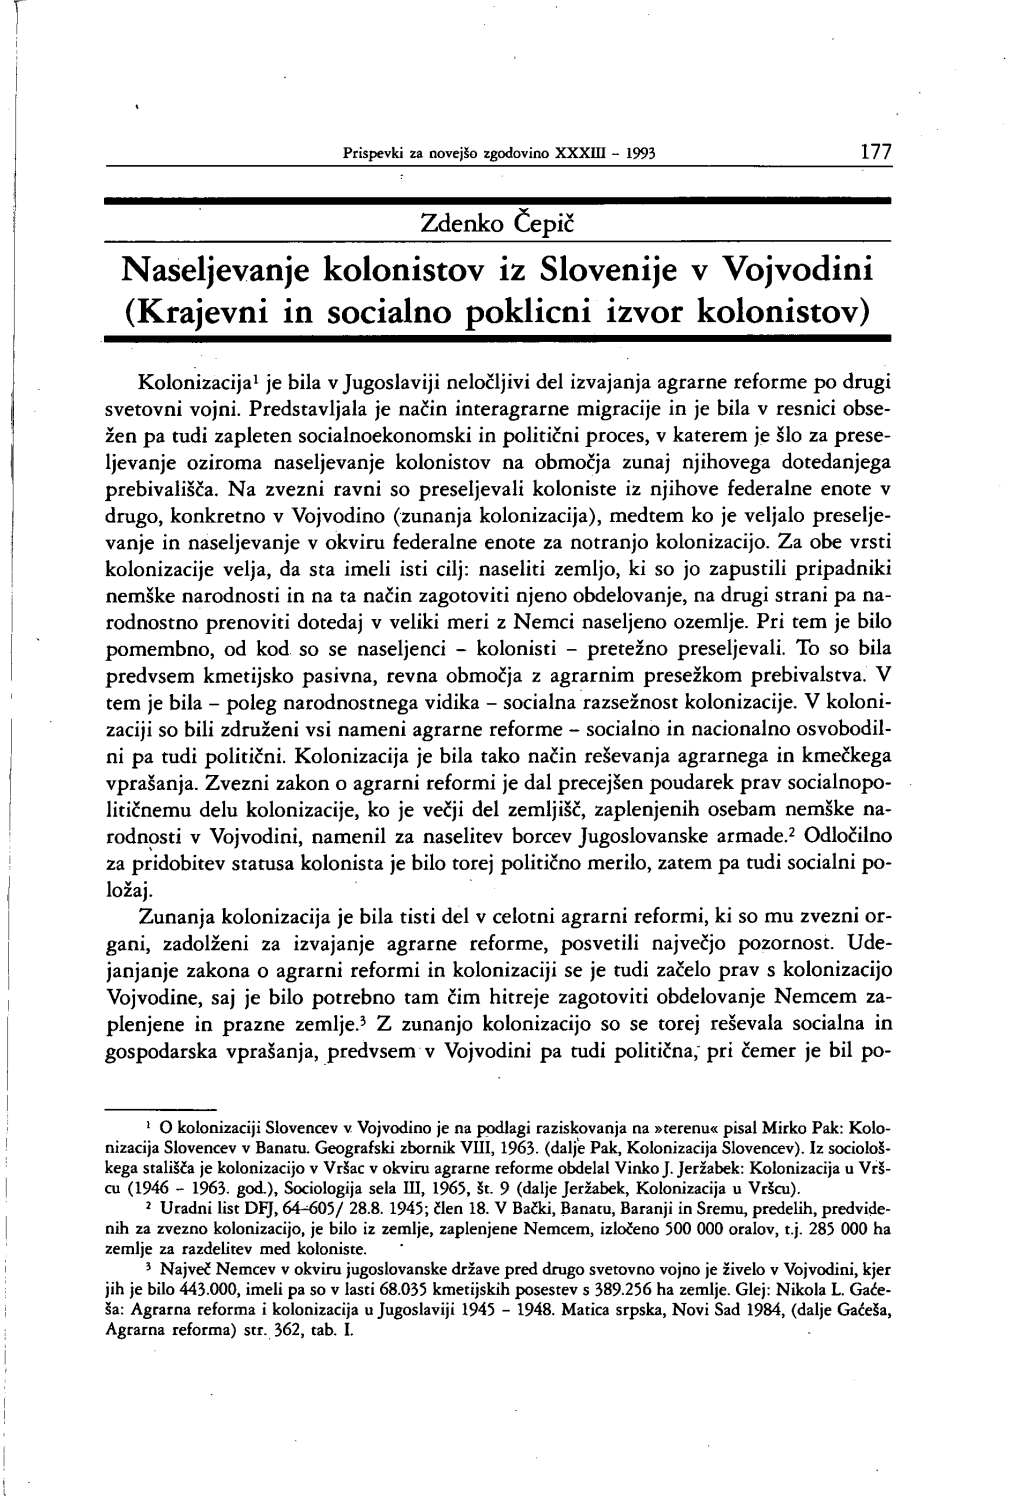 Naseljevanje Kolonistov Iz Slovenije V Vojvodini (Krajevni in Socialno Poklicni Izvor Kolonistov)